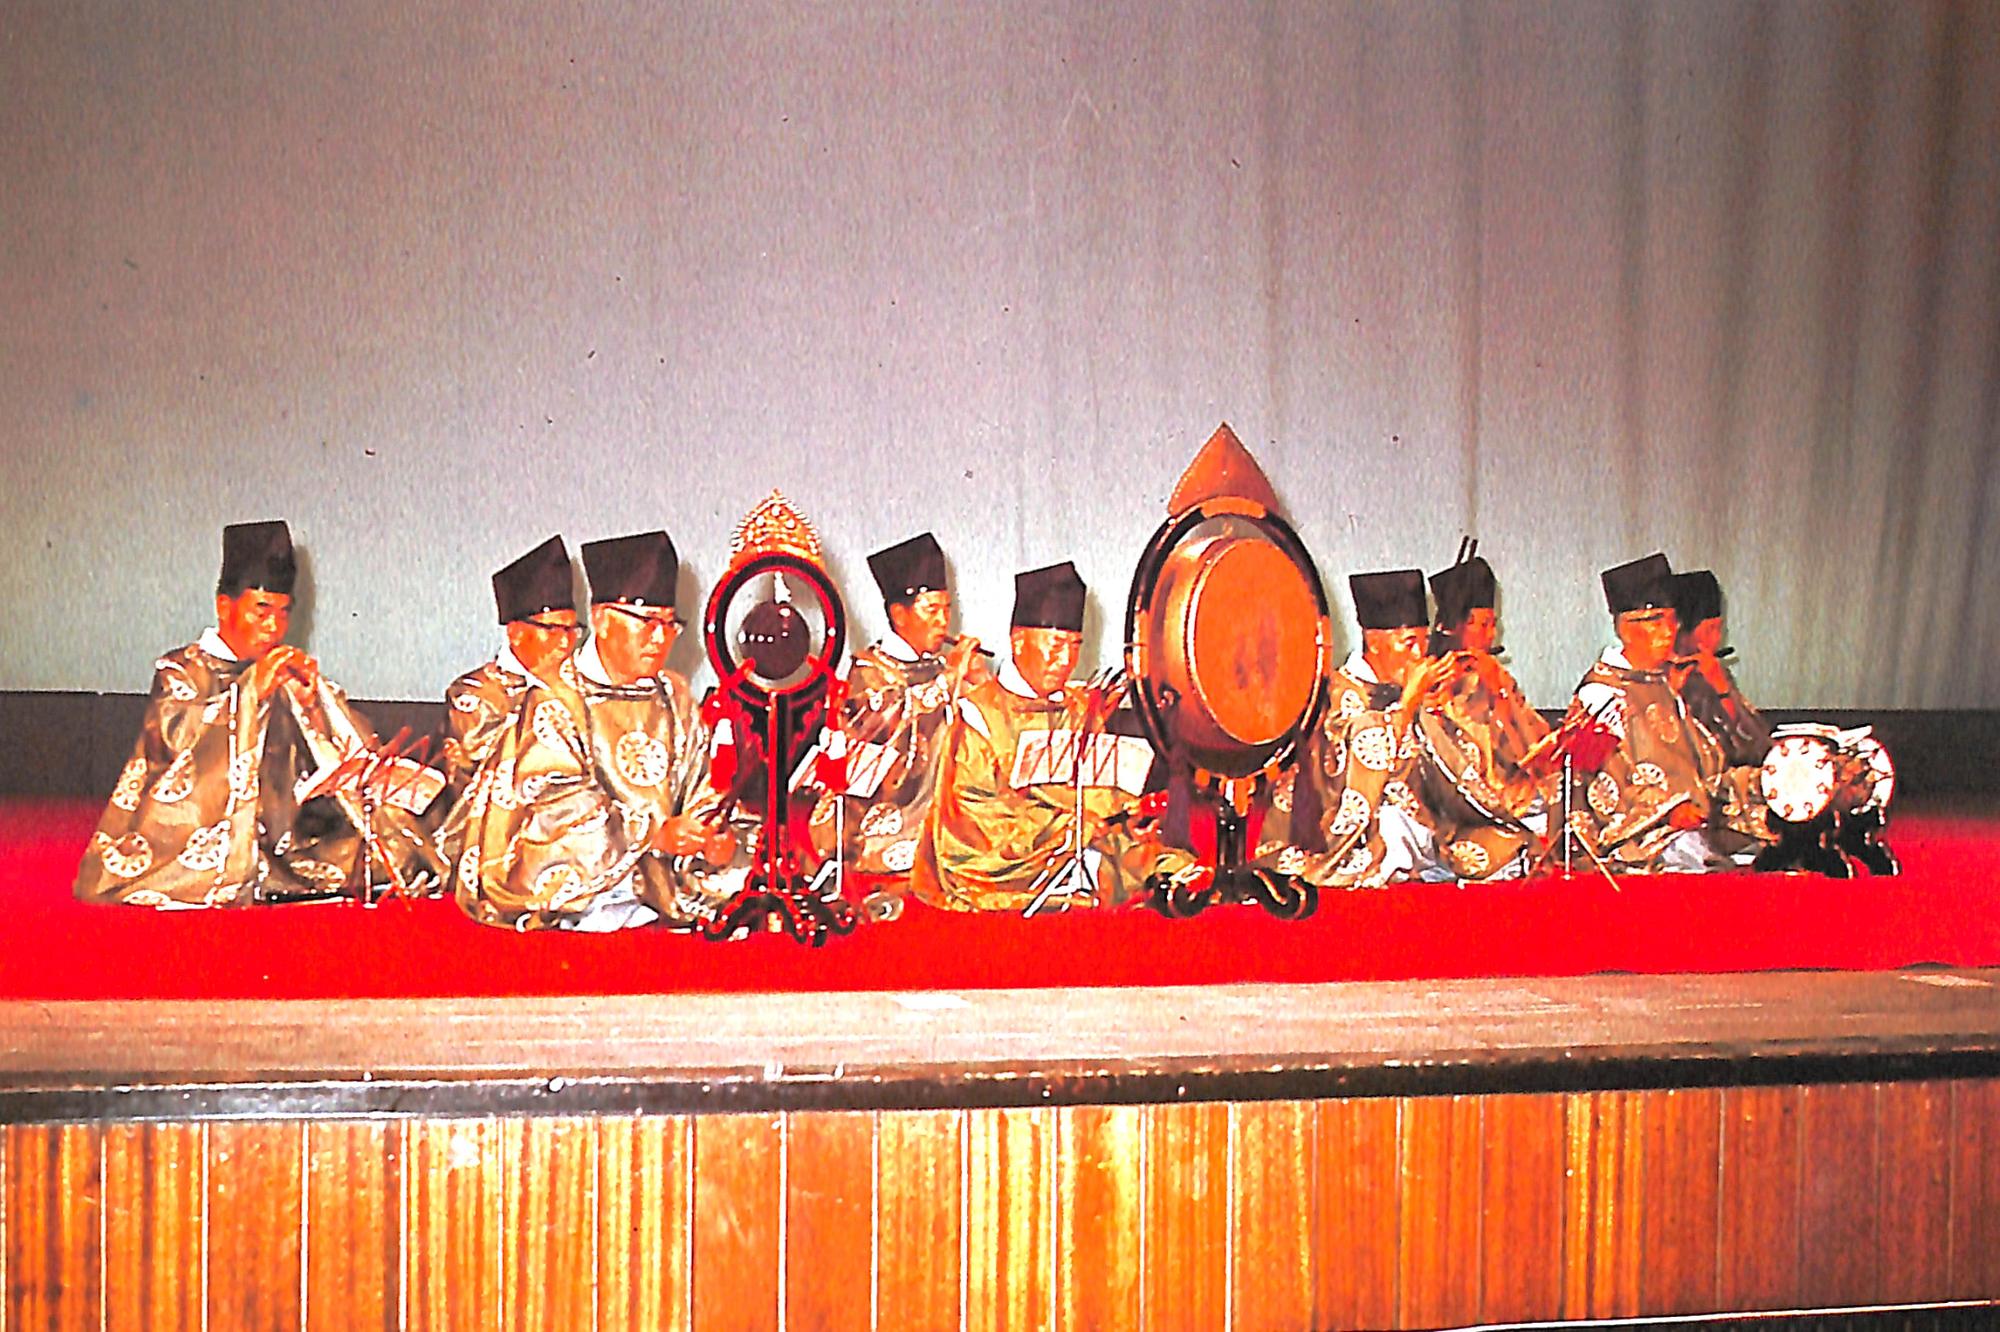 赤い絨毯の舞台の上で、着物を着て雅楽を演奏する岩見沢雅楽会の写真